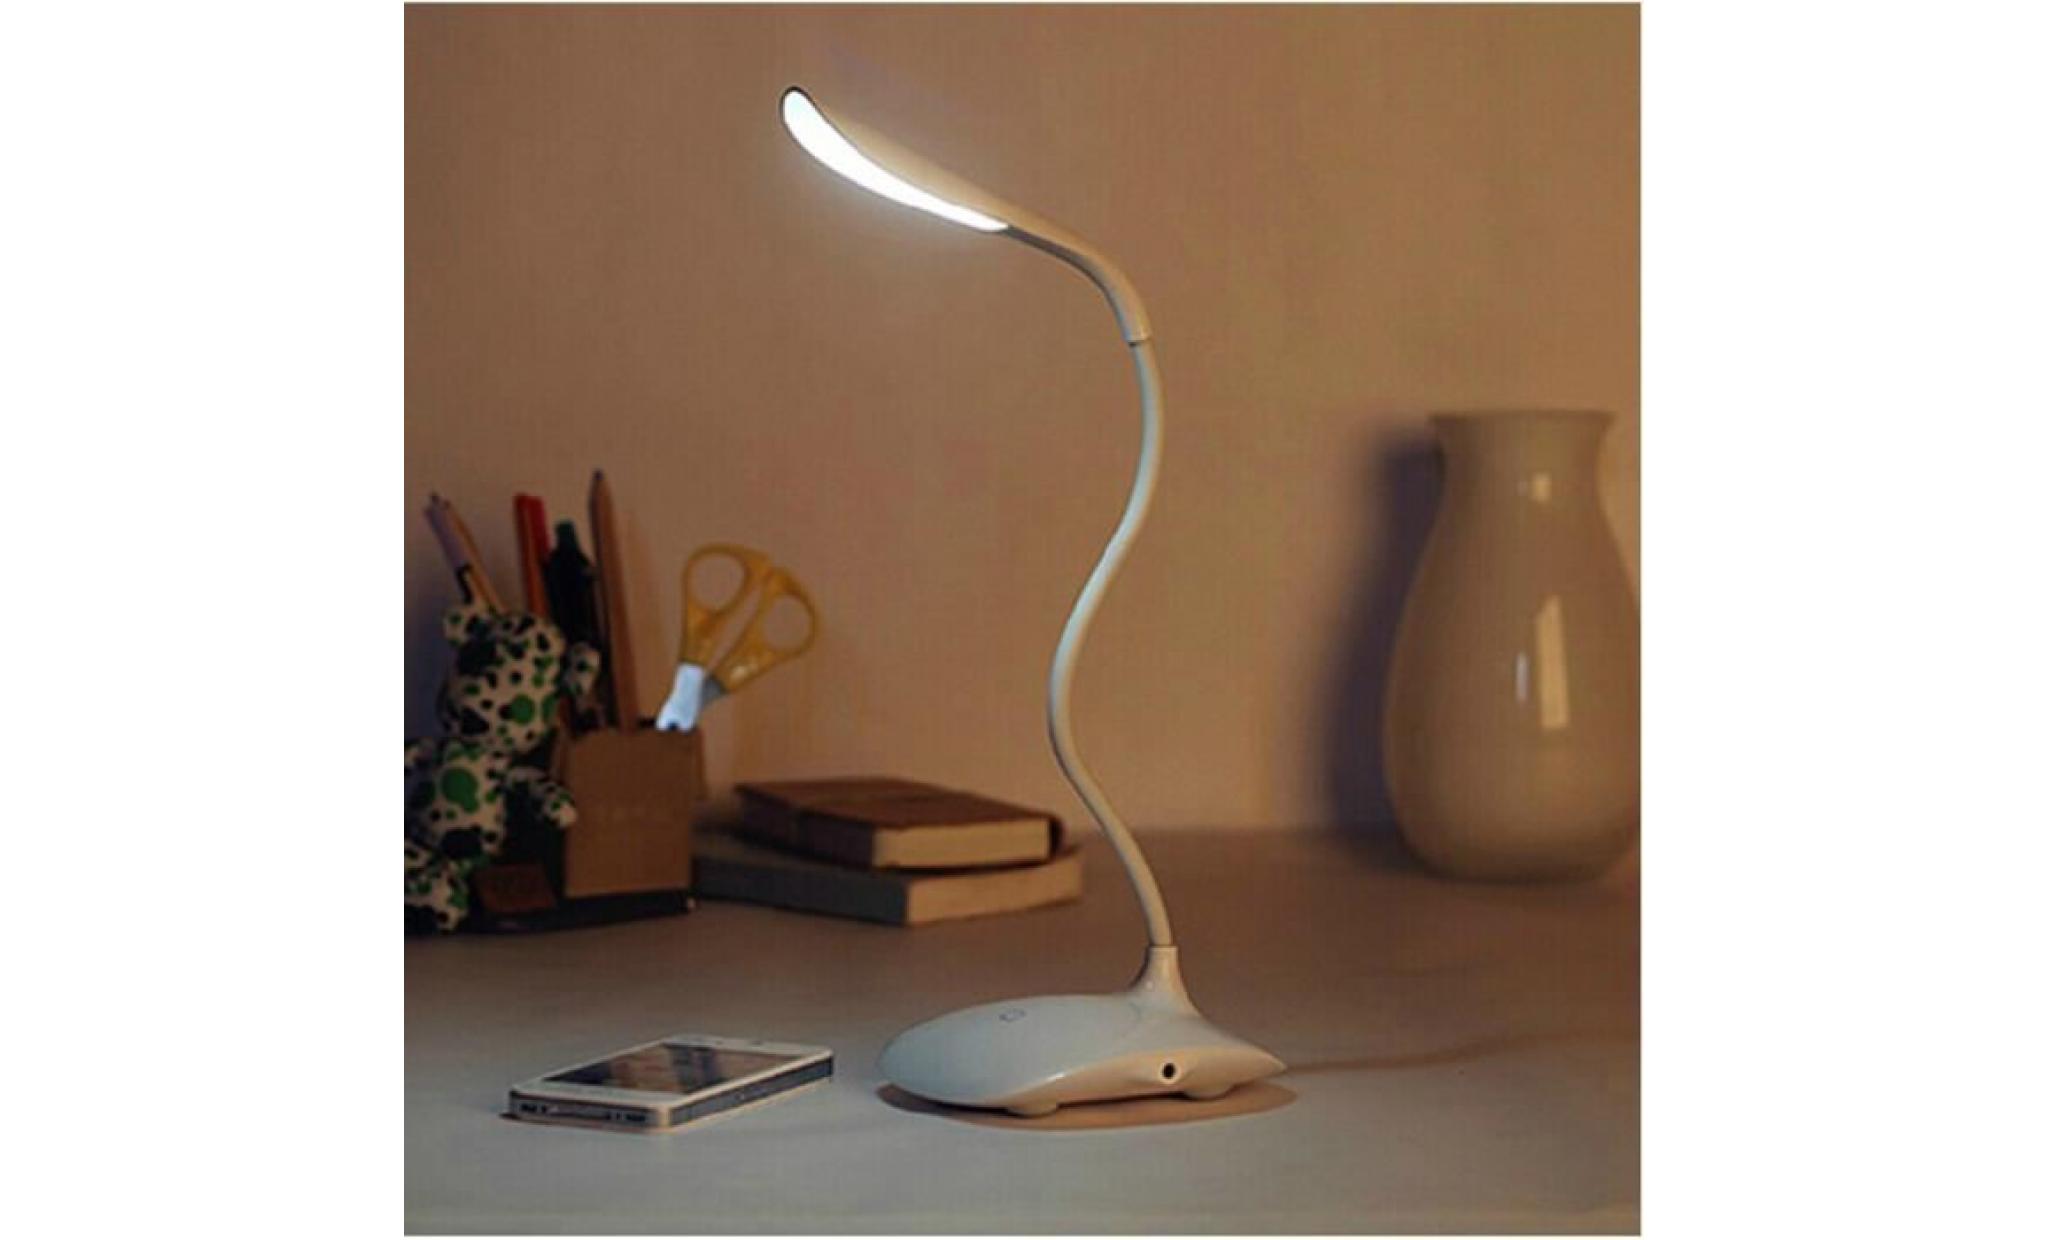 Dimmable LED Lampe de Bureau,Lampe de Table (600LUMEN, Touch Control,3-Dimmer Level,bras flexible,Noir) [Classe énergétique A+++] pas cher